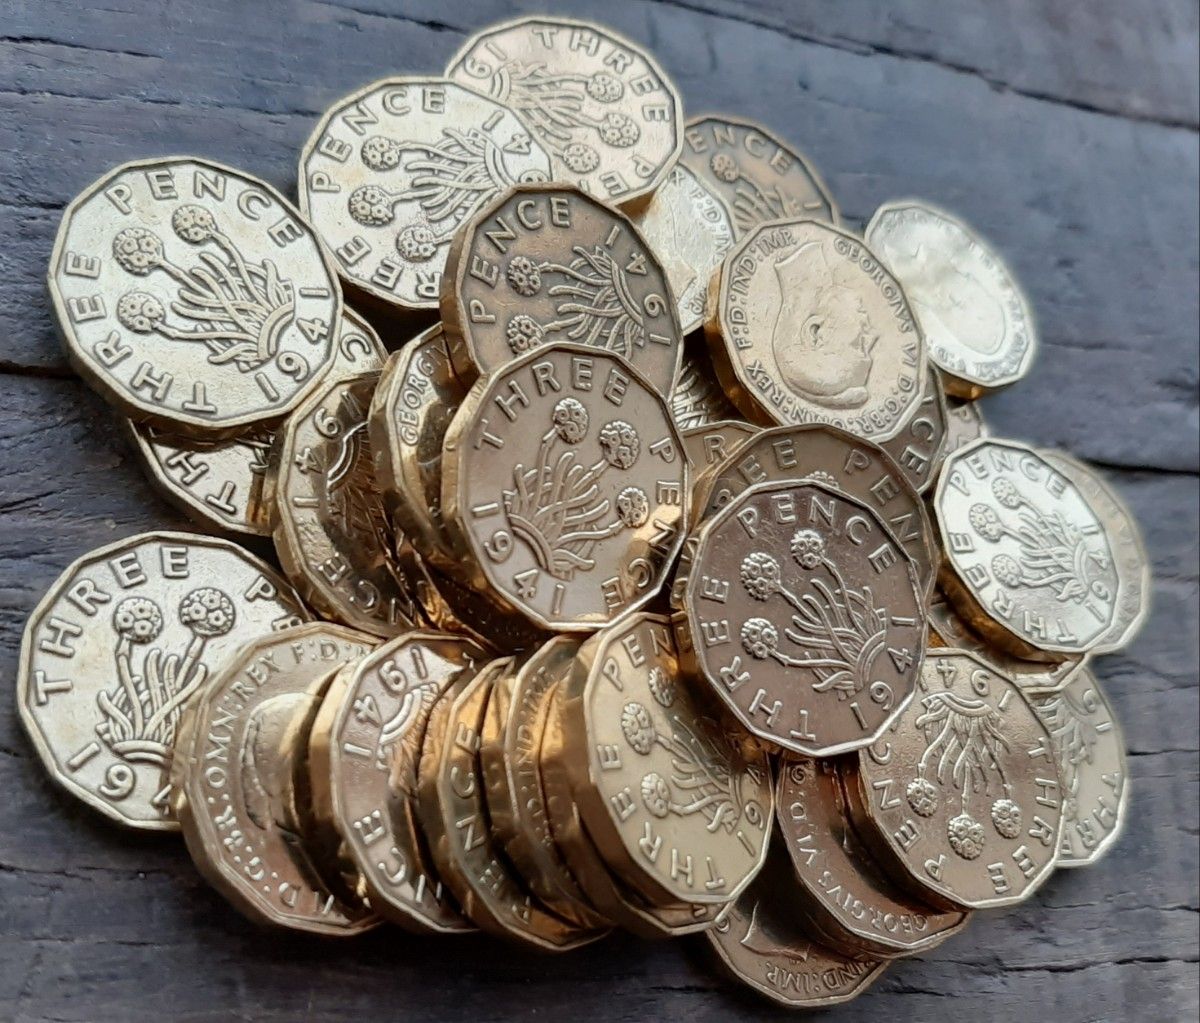 1937年~1952年 英国 3ペニーコイン 100個セットイギリス 3ペンスブラス美物ジョージ王21mm x 2.5mm6.8g